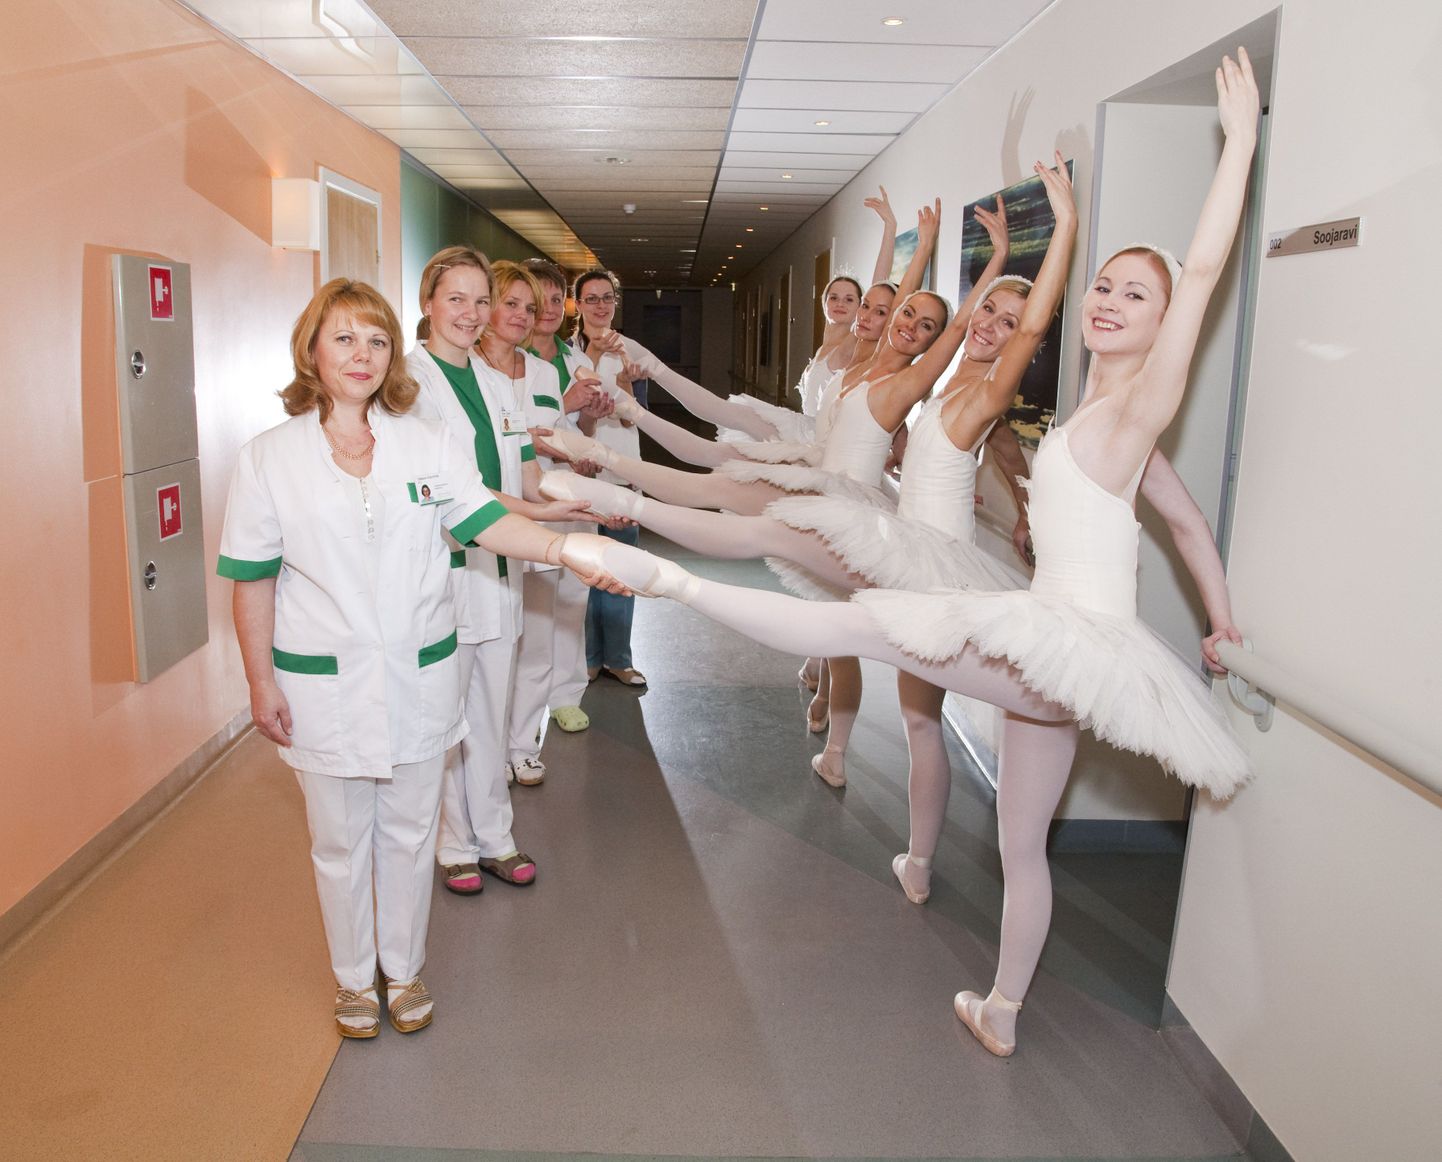 Ida-Tallinna keskhaigla ja rahvusooper Estonia koostööleppe sõlmimisel tutvusid balletitantsijad haiglatöötajatega.